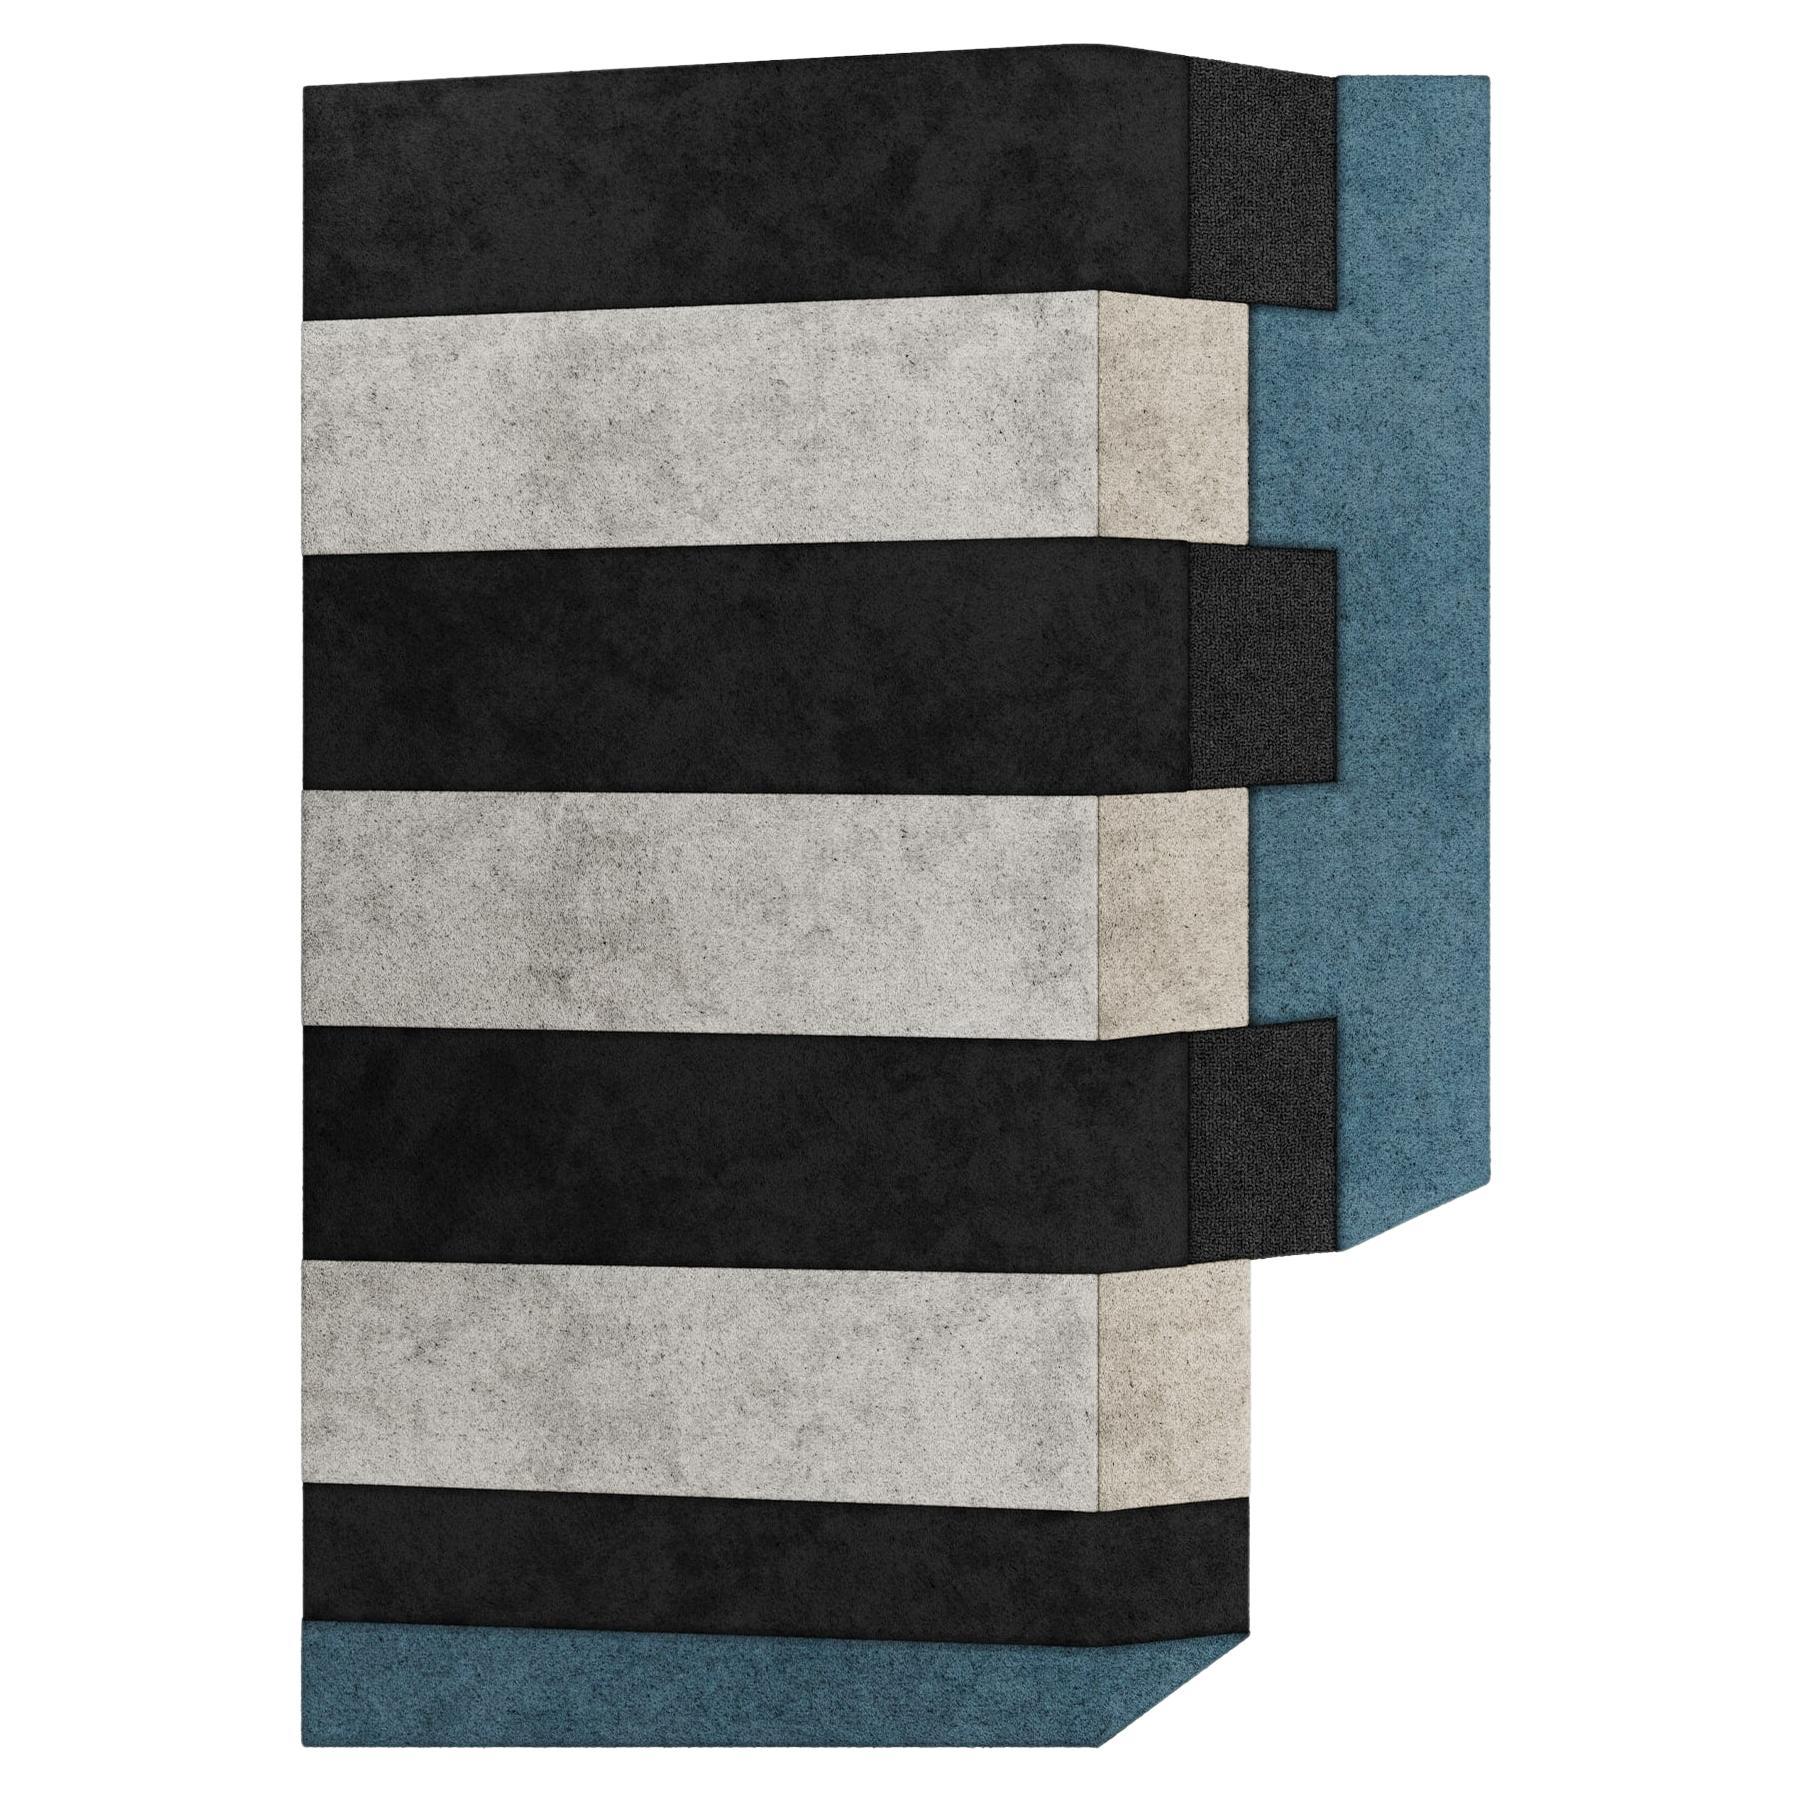 Moderner geometrischer Eco-Friendly Retro-Teppich mit unregelmäßiger Form, handgefertigt, modern